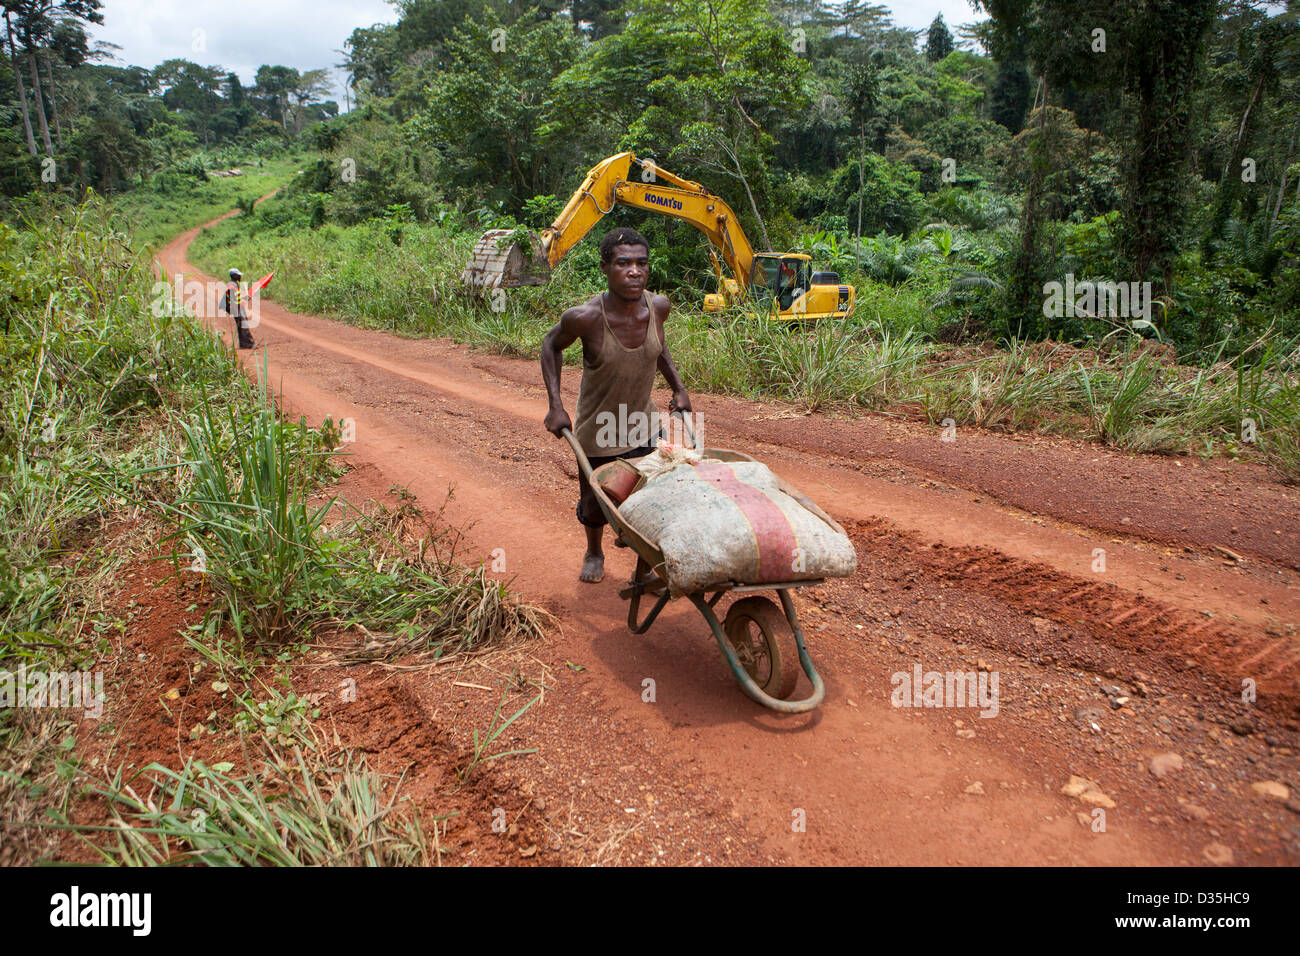 Kongo, 27. September 2012: chinesische Straßen Ingenieure von chinesischen Unternehmen Sinohydro bauen eine große neue Asphaltstraße an Sembe durch die Wälder der Tridom. Diesen Weg haben verheerende Auswirkungen auf den Wald und seine Tierwelt. Stockfoto